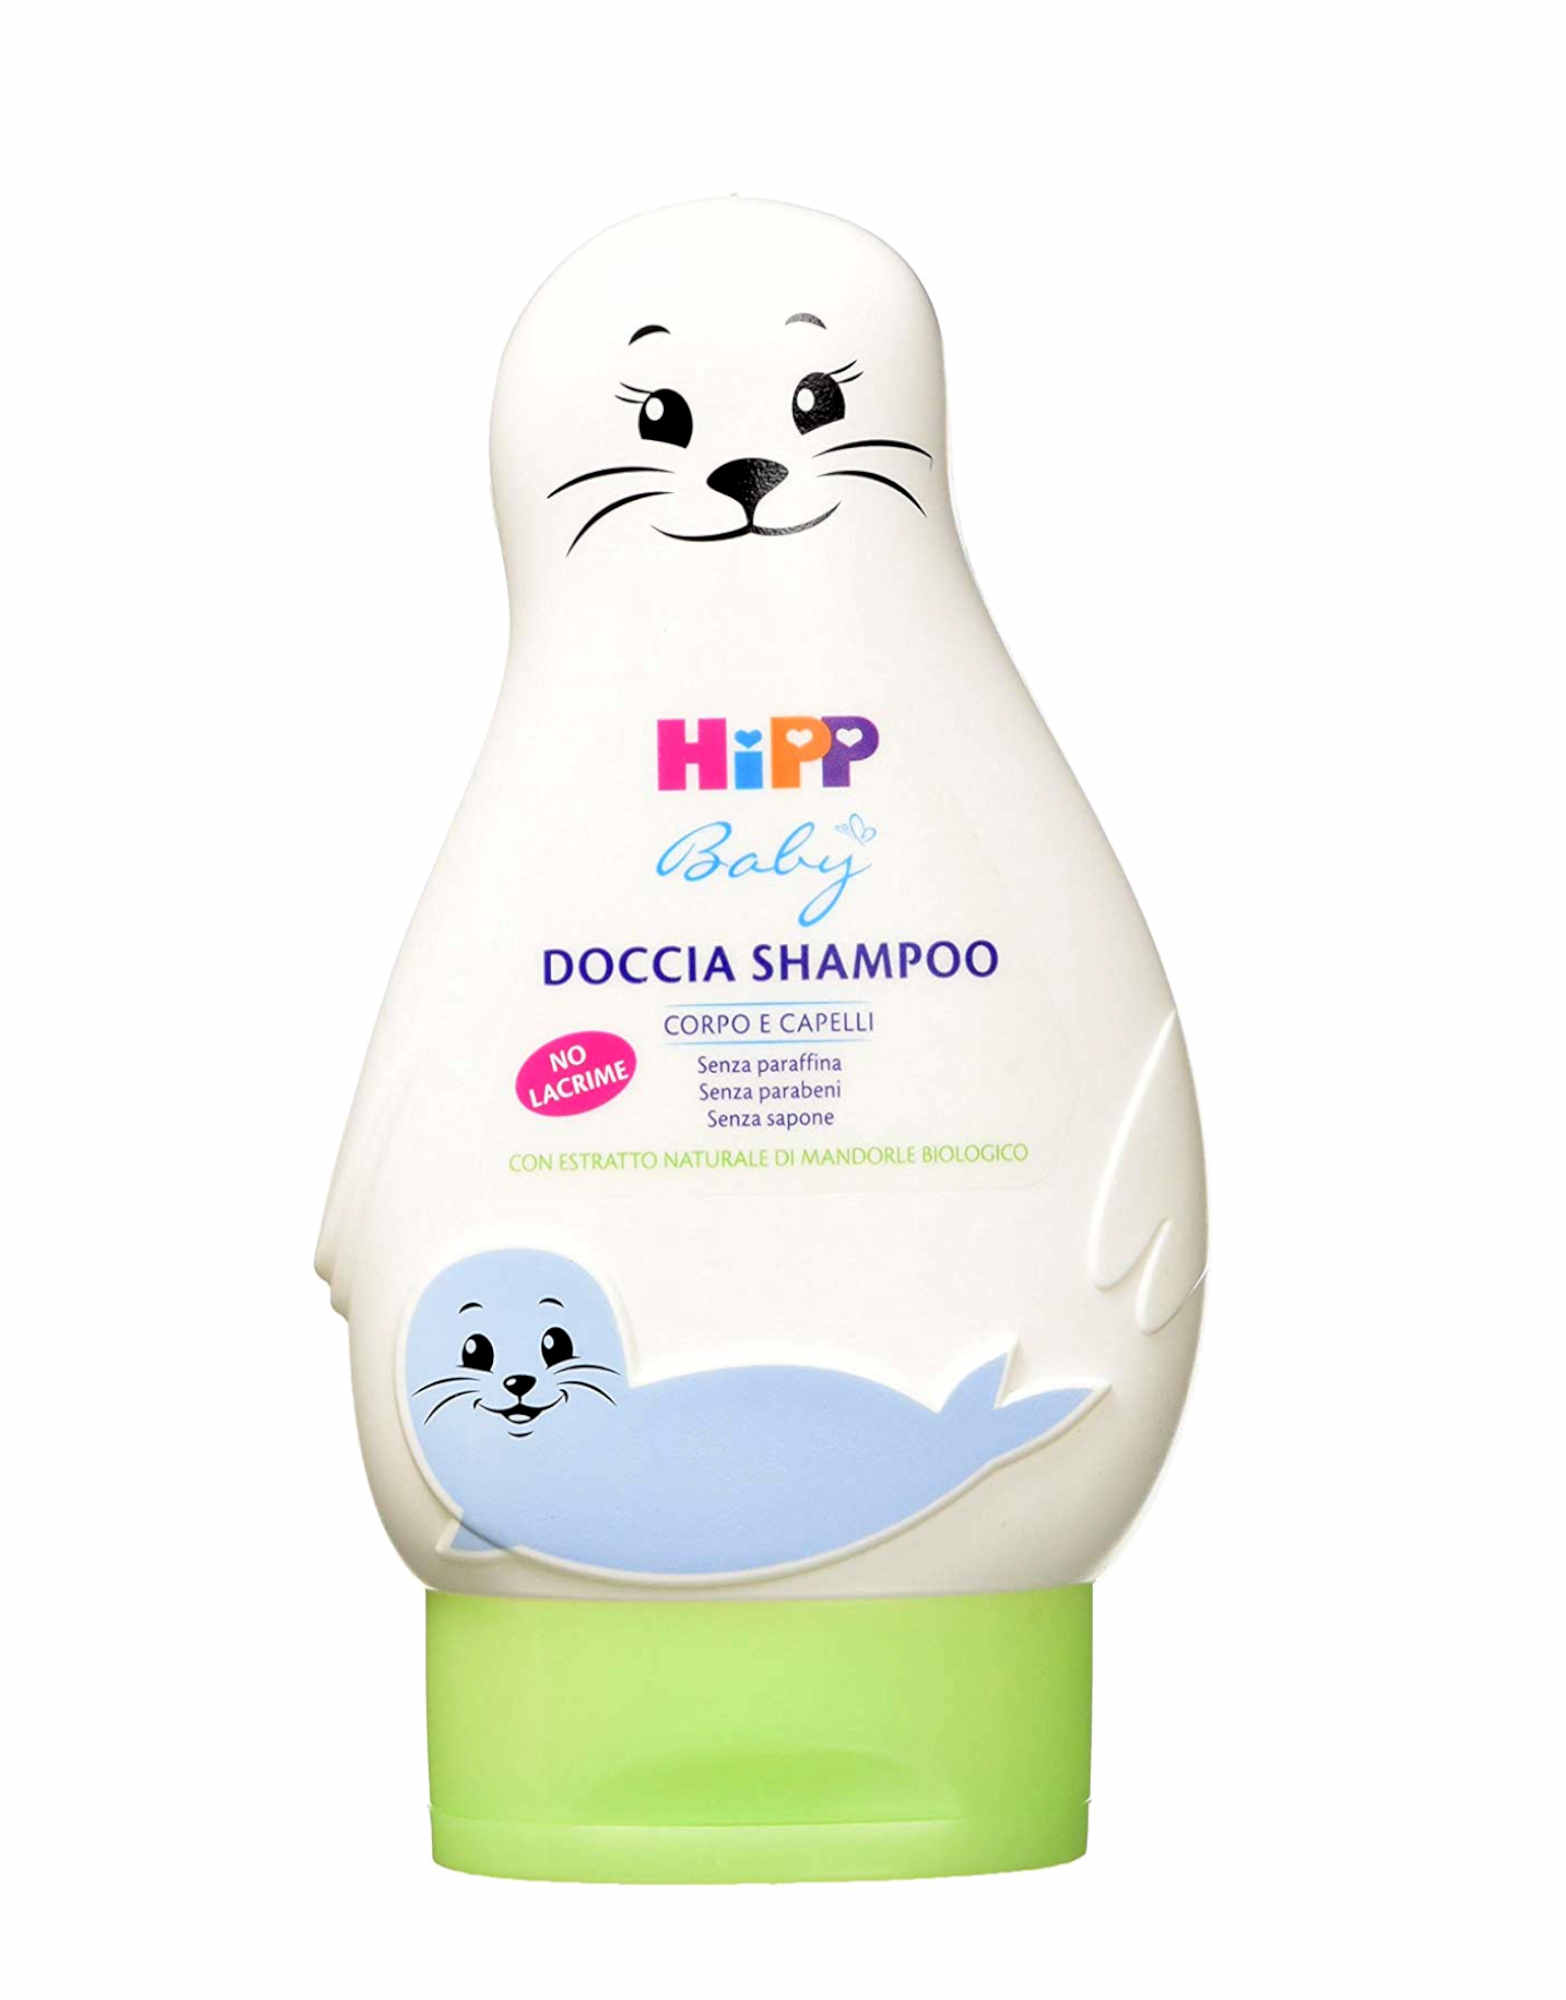 HIPP Baby - Doccia Shampoo 200ml